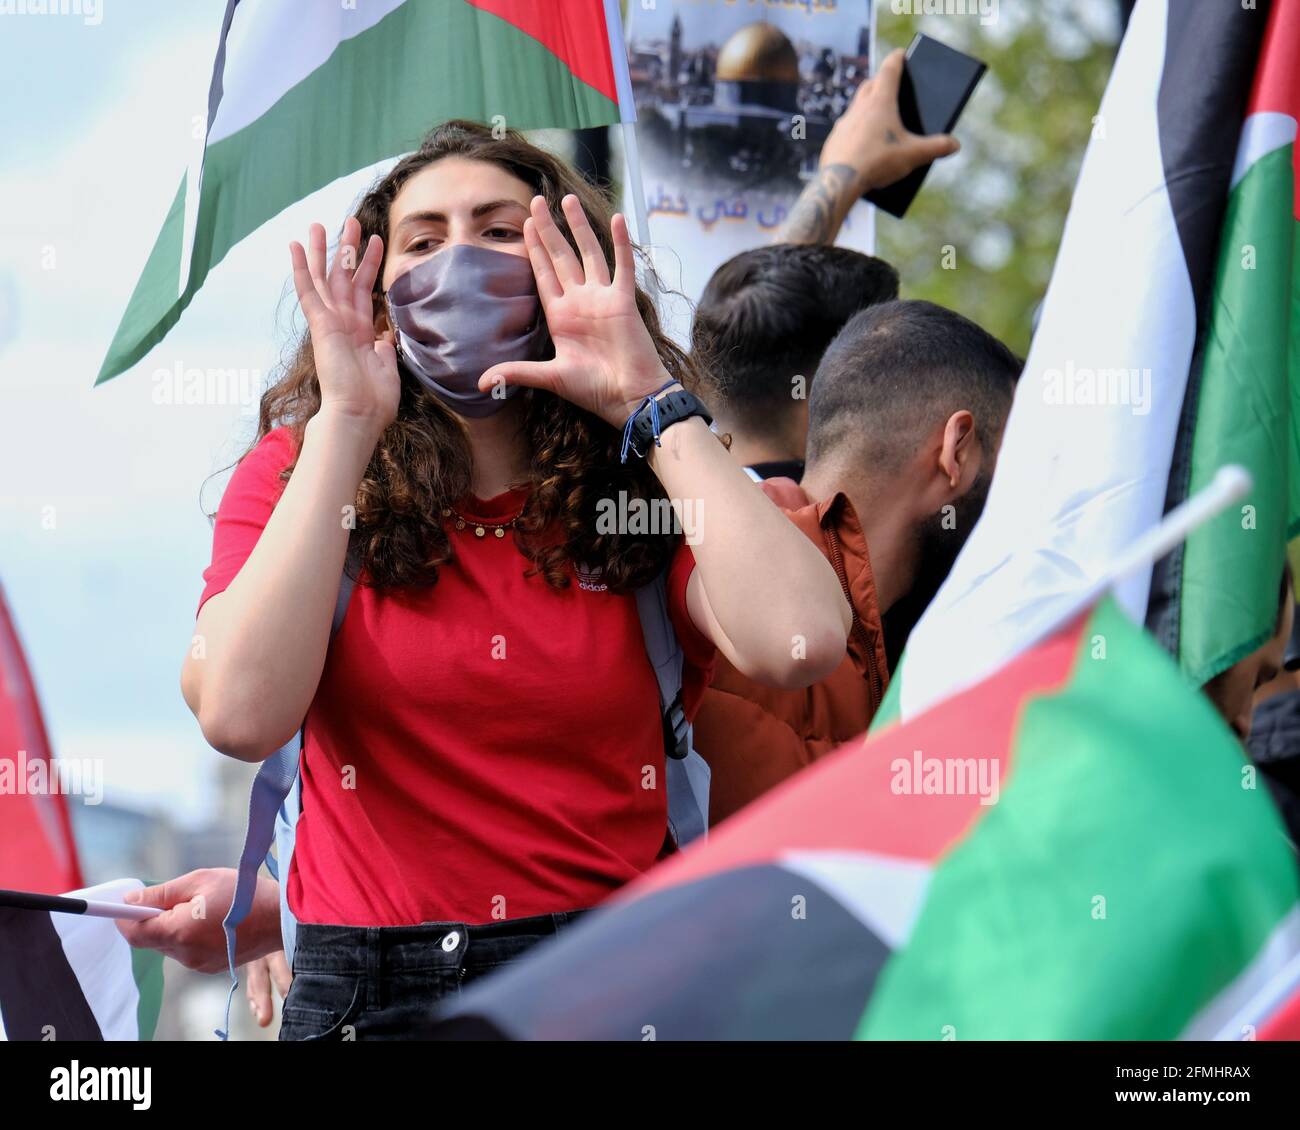 Eine junge Frau singt bei einem Protest gegen die geplanten Zwangsräumungen palästinensischer Familien für israelische Siedler in Scheich Jerrah, Jerusalem Stockfoto